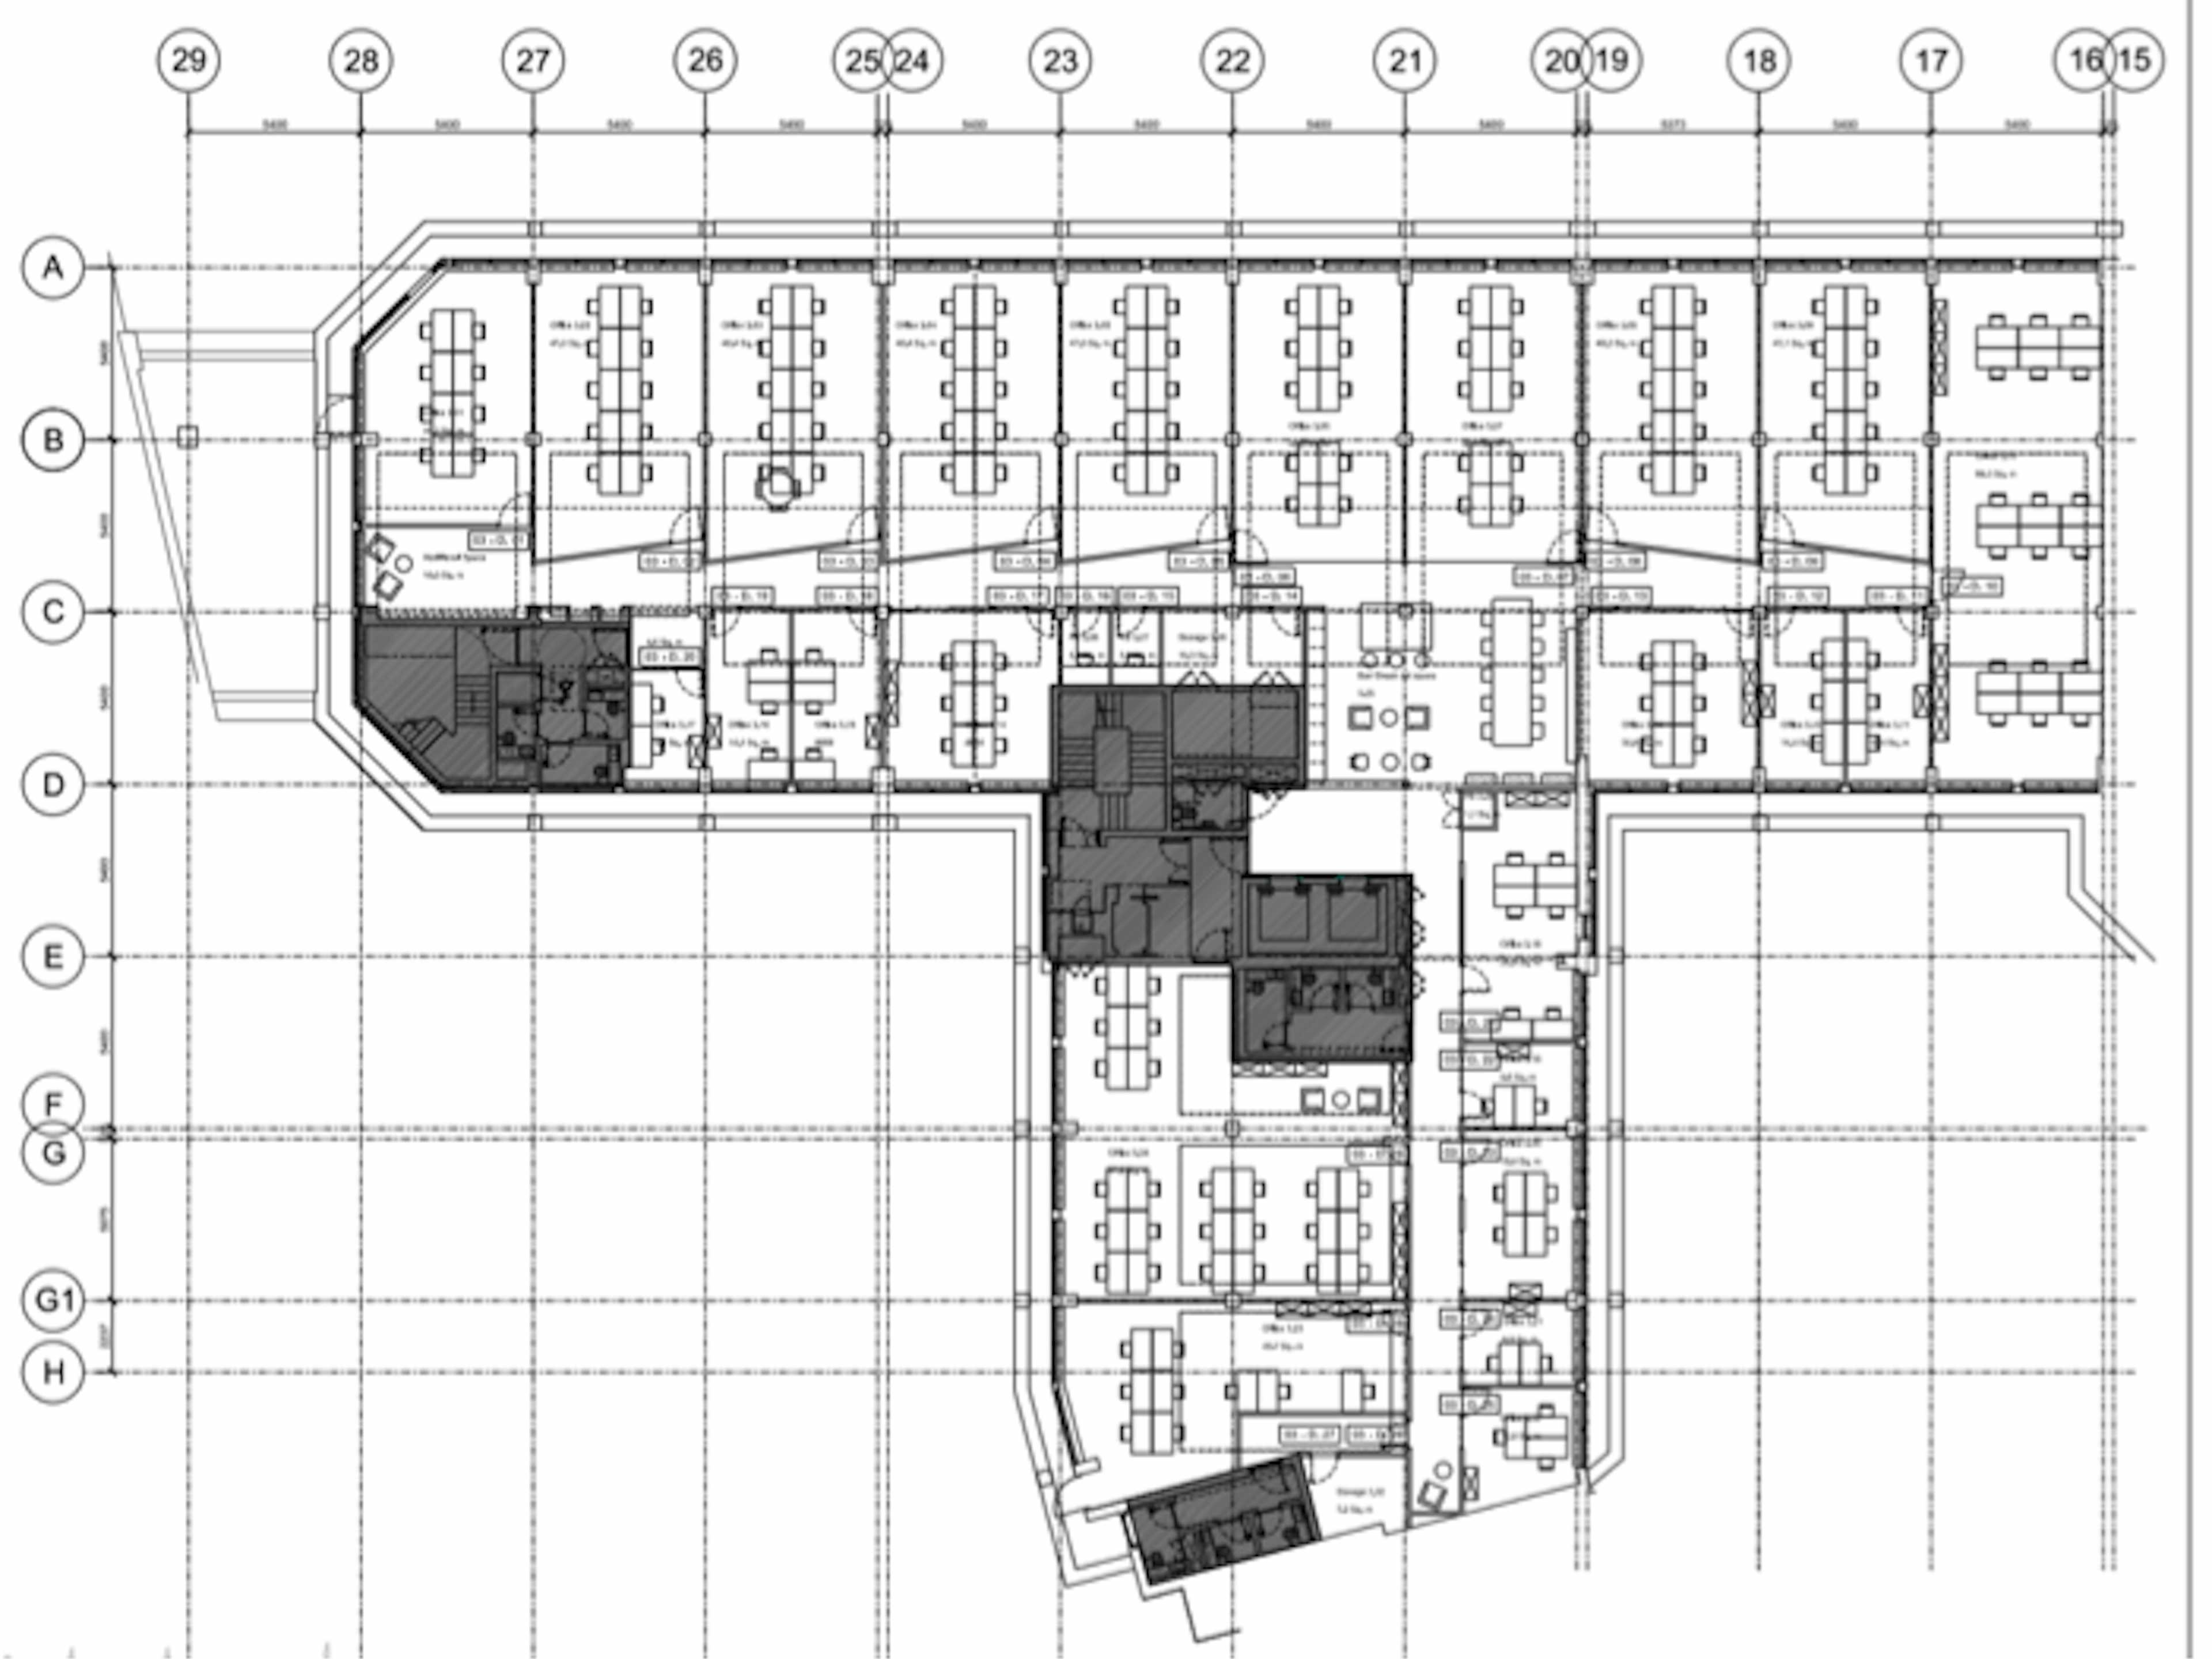 Floor plan of the 3rd floor